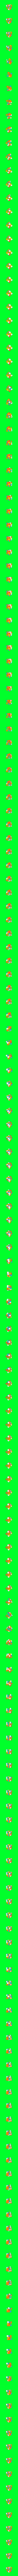 3x3 Cube #10